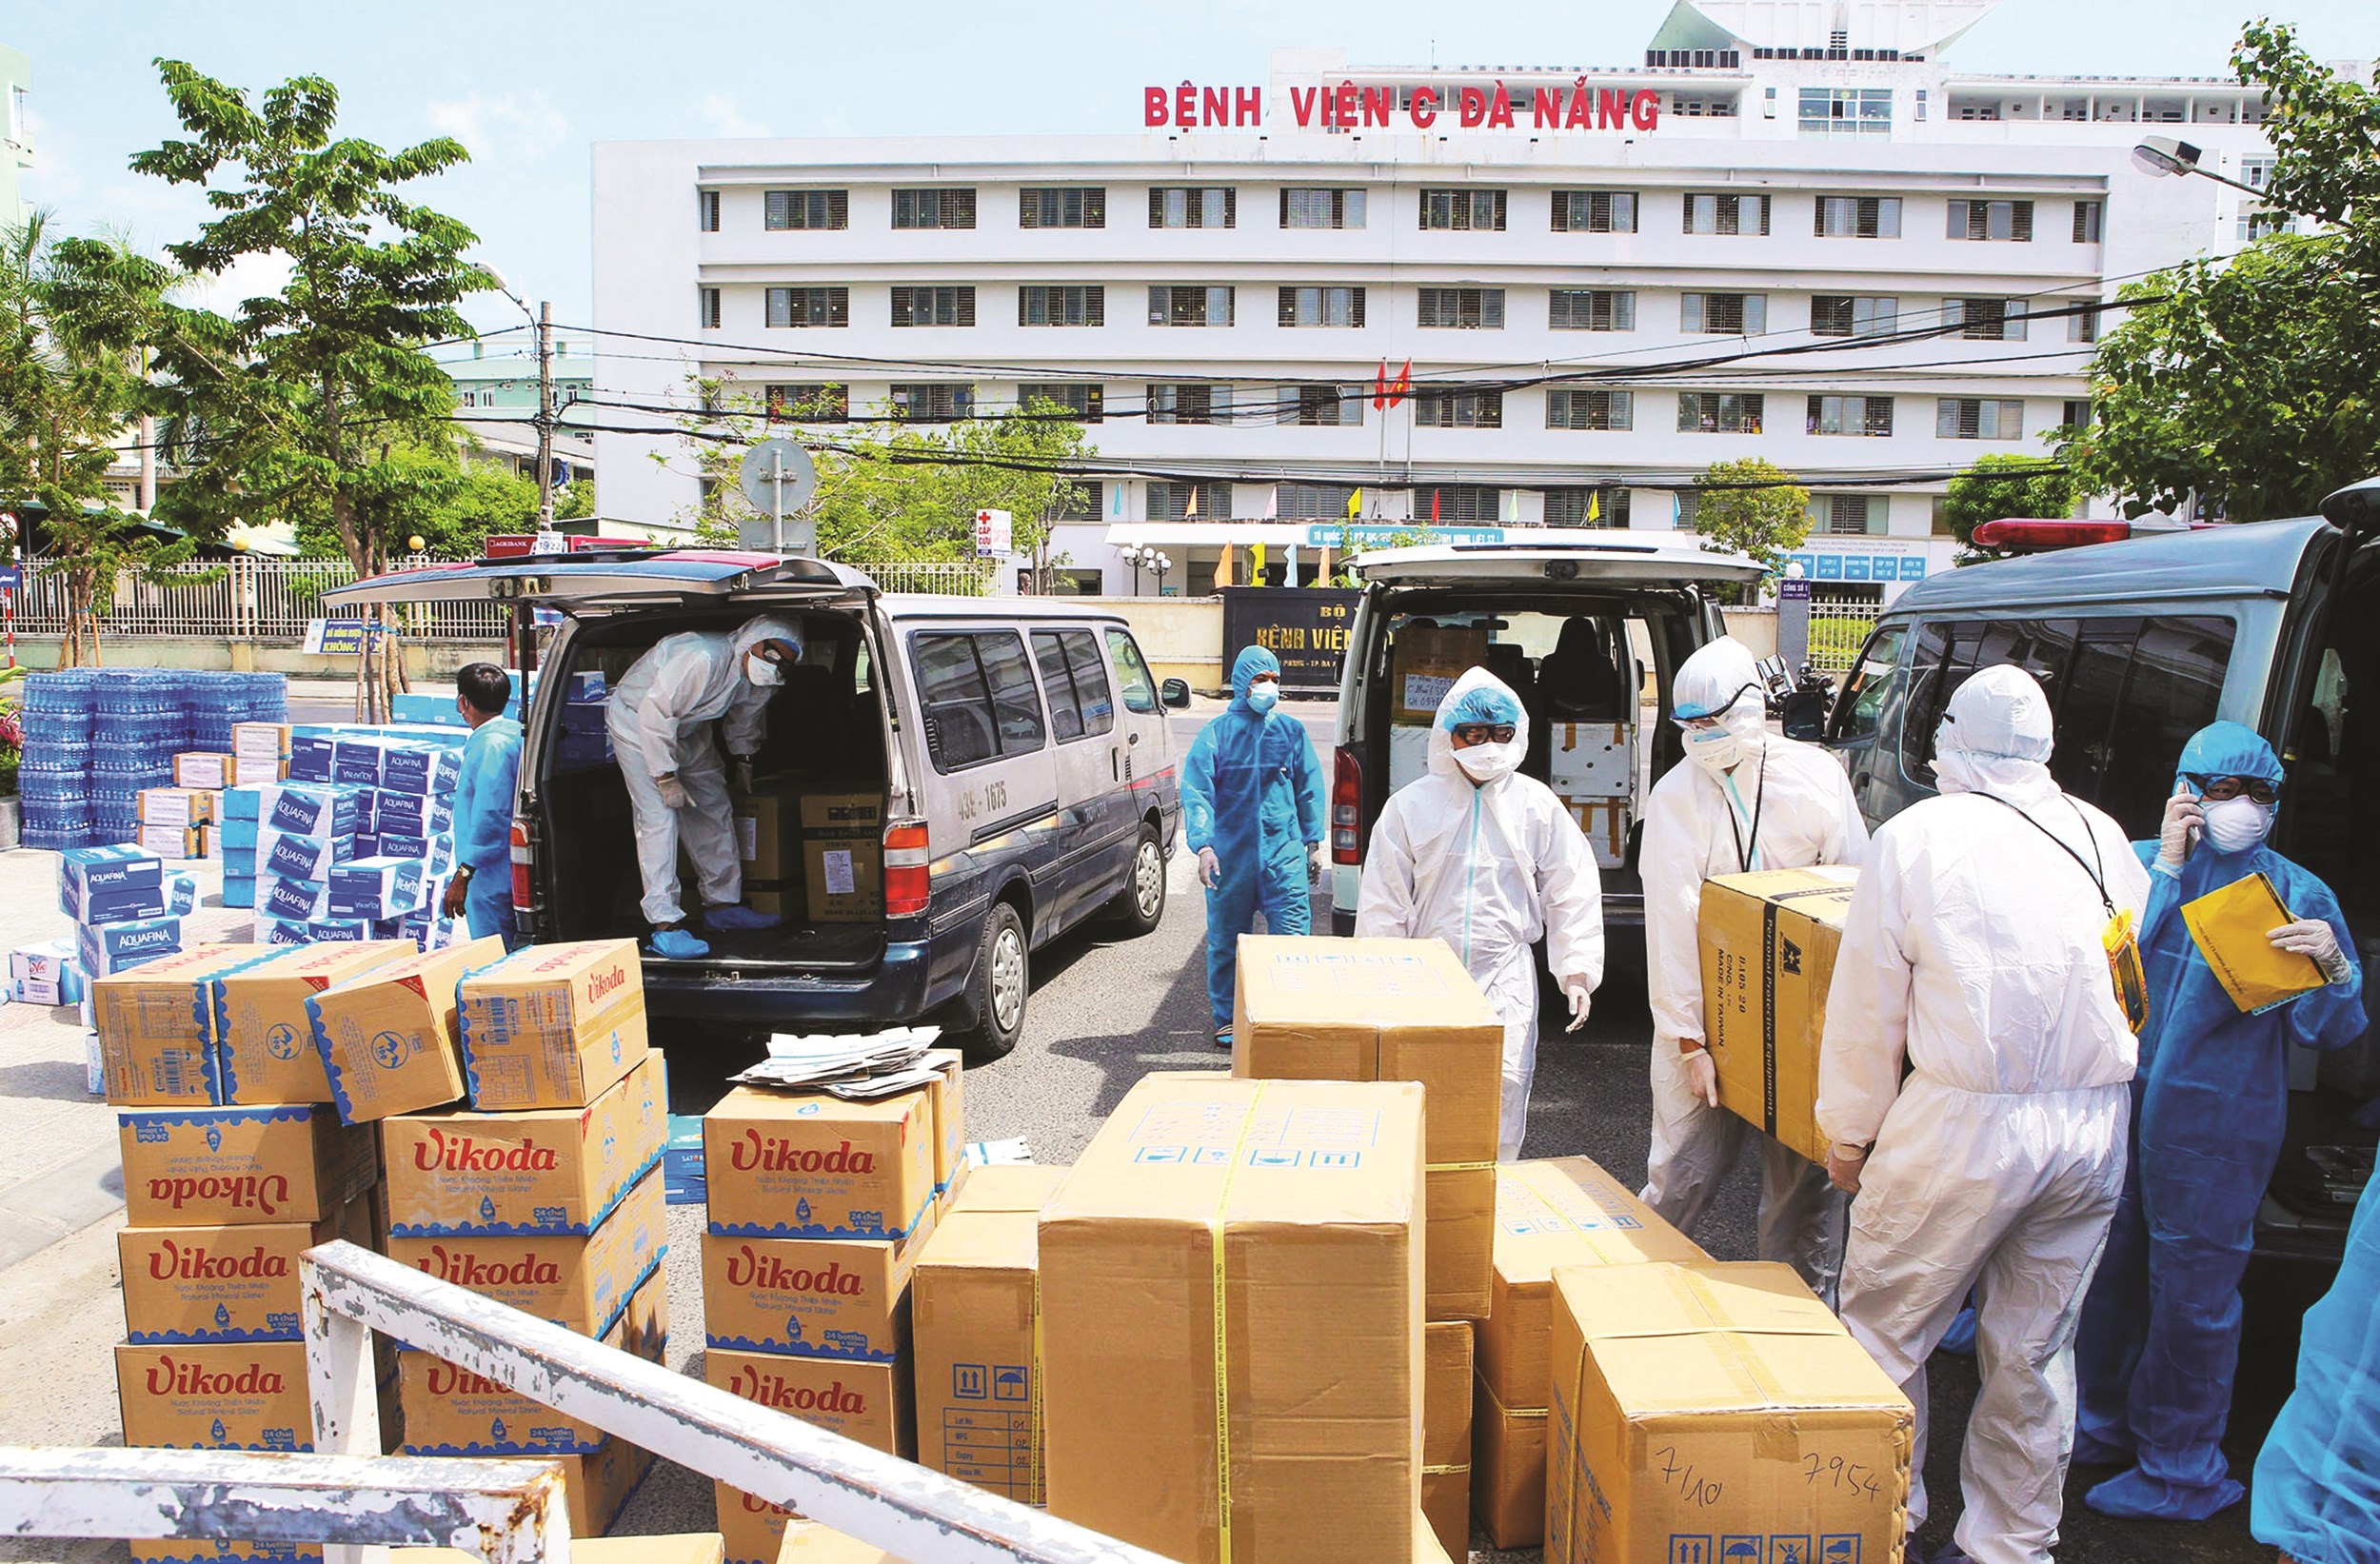 Nhiều hàng hóa thiết yếu được các tổ chức, cá nhân chuyển đến hỗ trợ nhân viên y tế và bệnh nhân đang được cách ly tại Bệnh viện C Đà Nẵng